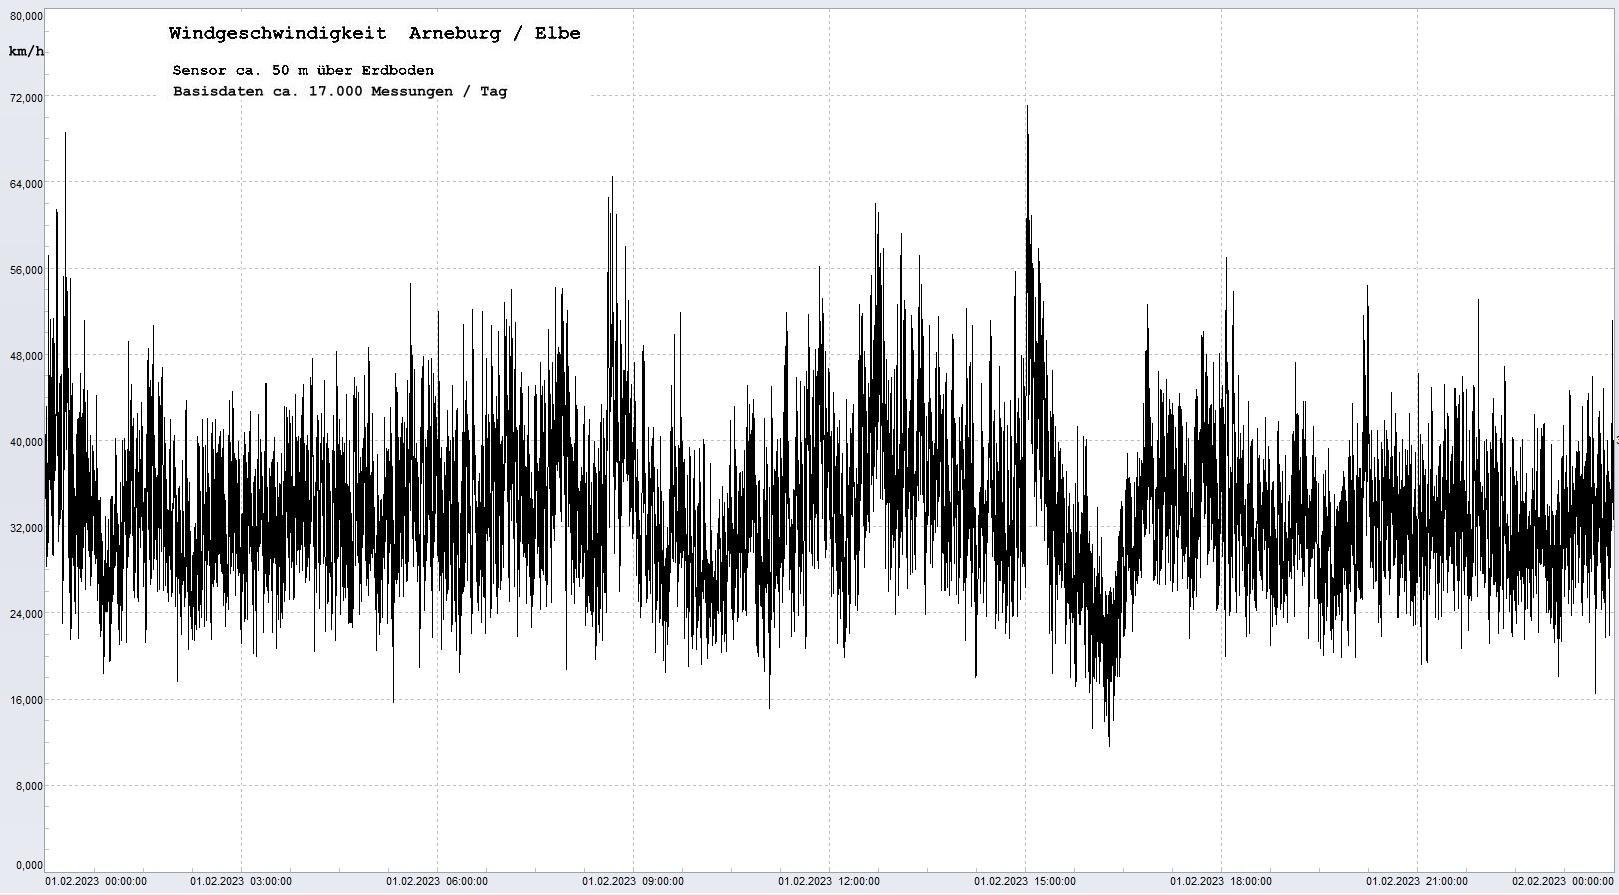 Arneburg Tages-Diagramm Winddaten, 01.02.2023
  Diagramm, Sensor auf Gebude, ca. 50 m ber Erdboden, Basis: 5s-Aufzeichnung